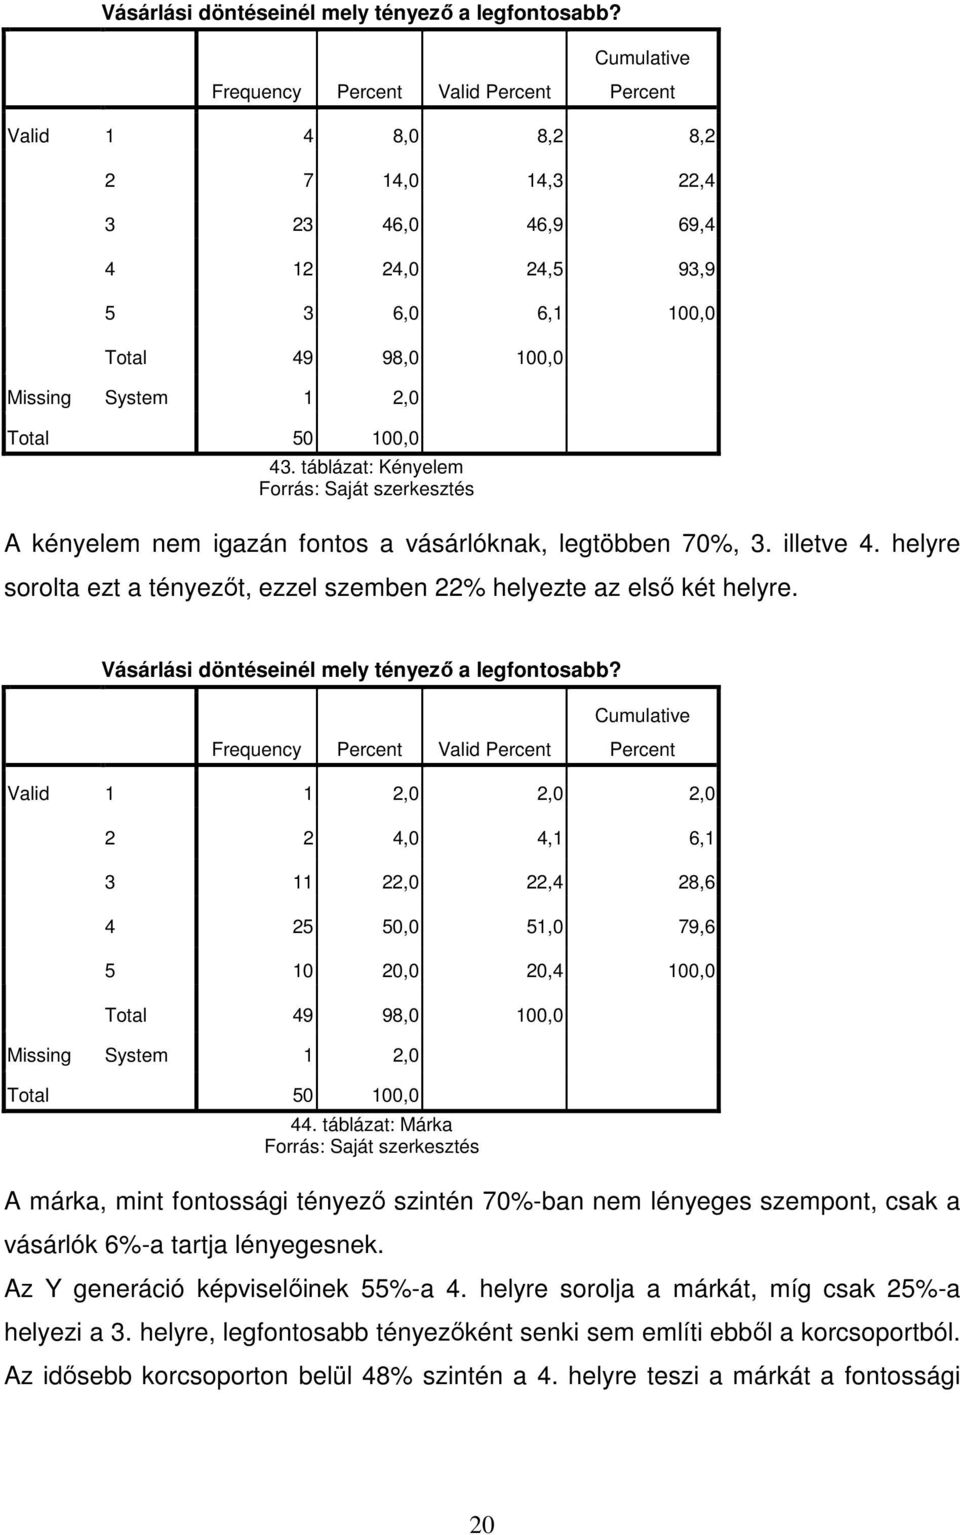 táblázat: Kényelem A kényelem nem igazán fontos a vásárlóknak, legtöbben 70%, 3. illetve 4. helyre sorolta ezt a tényezıt, ezzel szemben 22% helyezte az elsı két helyre.